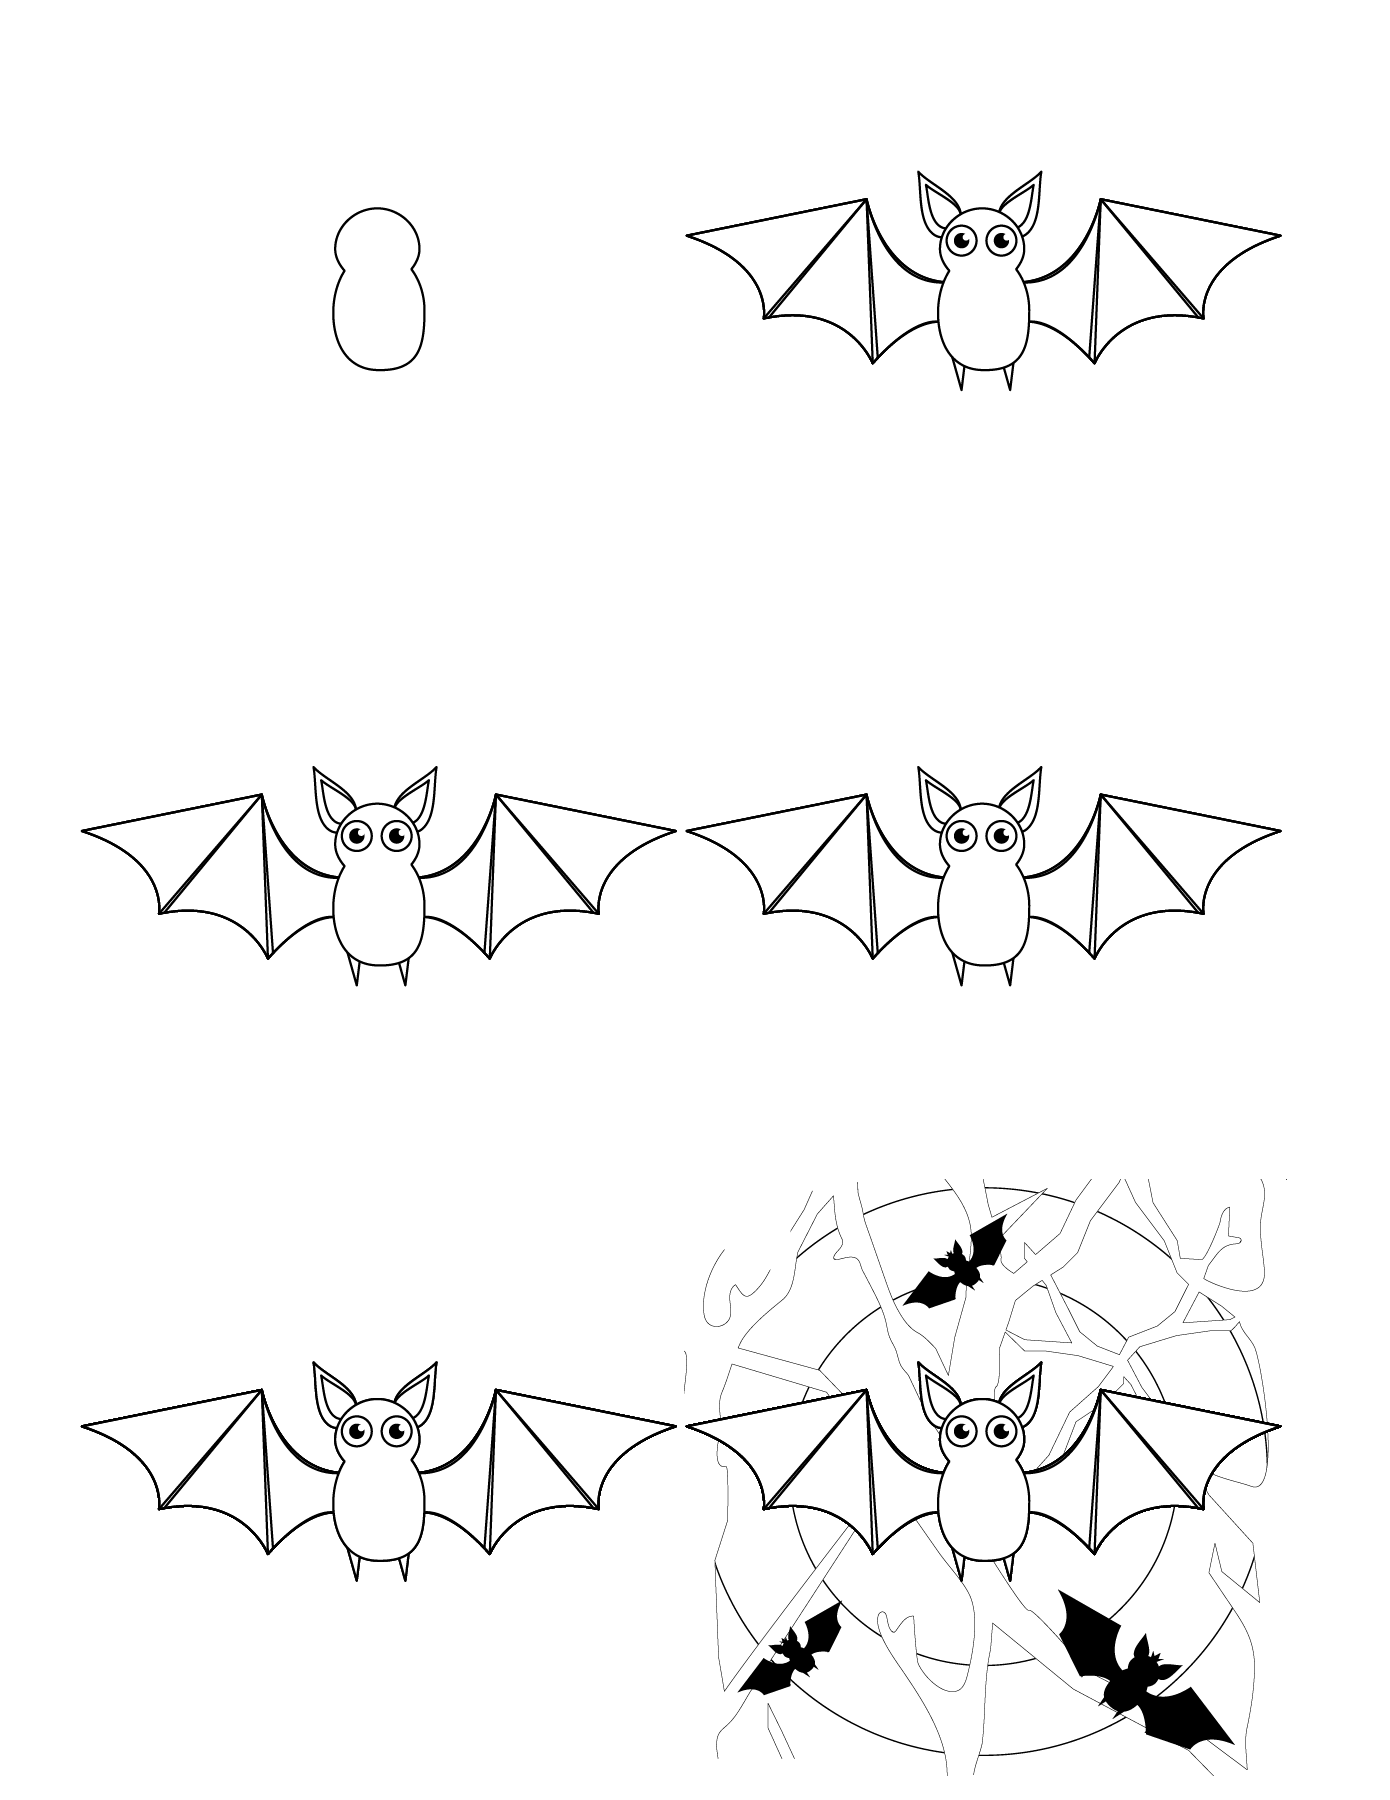 Chauve-souris de dessin animé (2) dessin